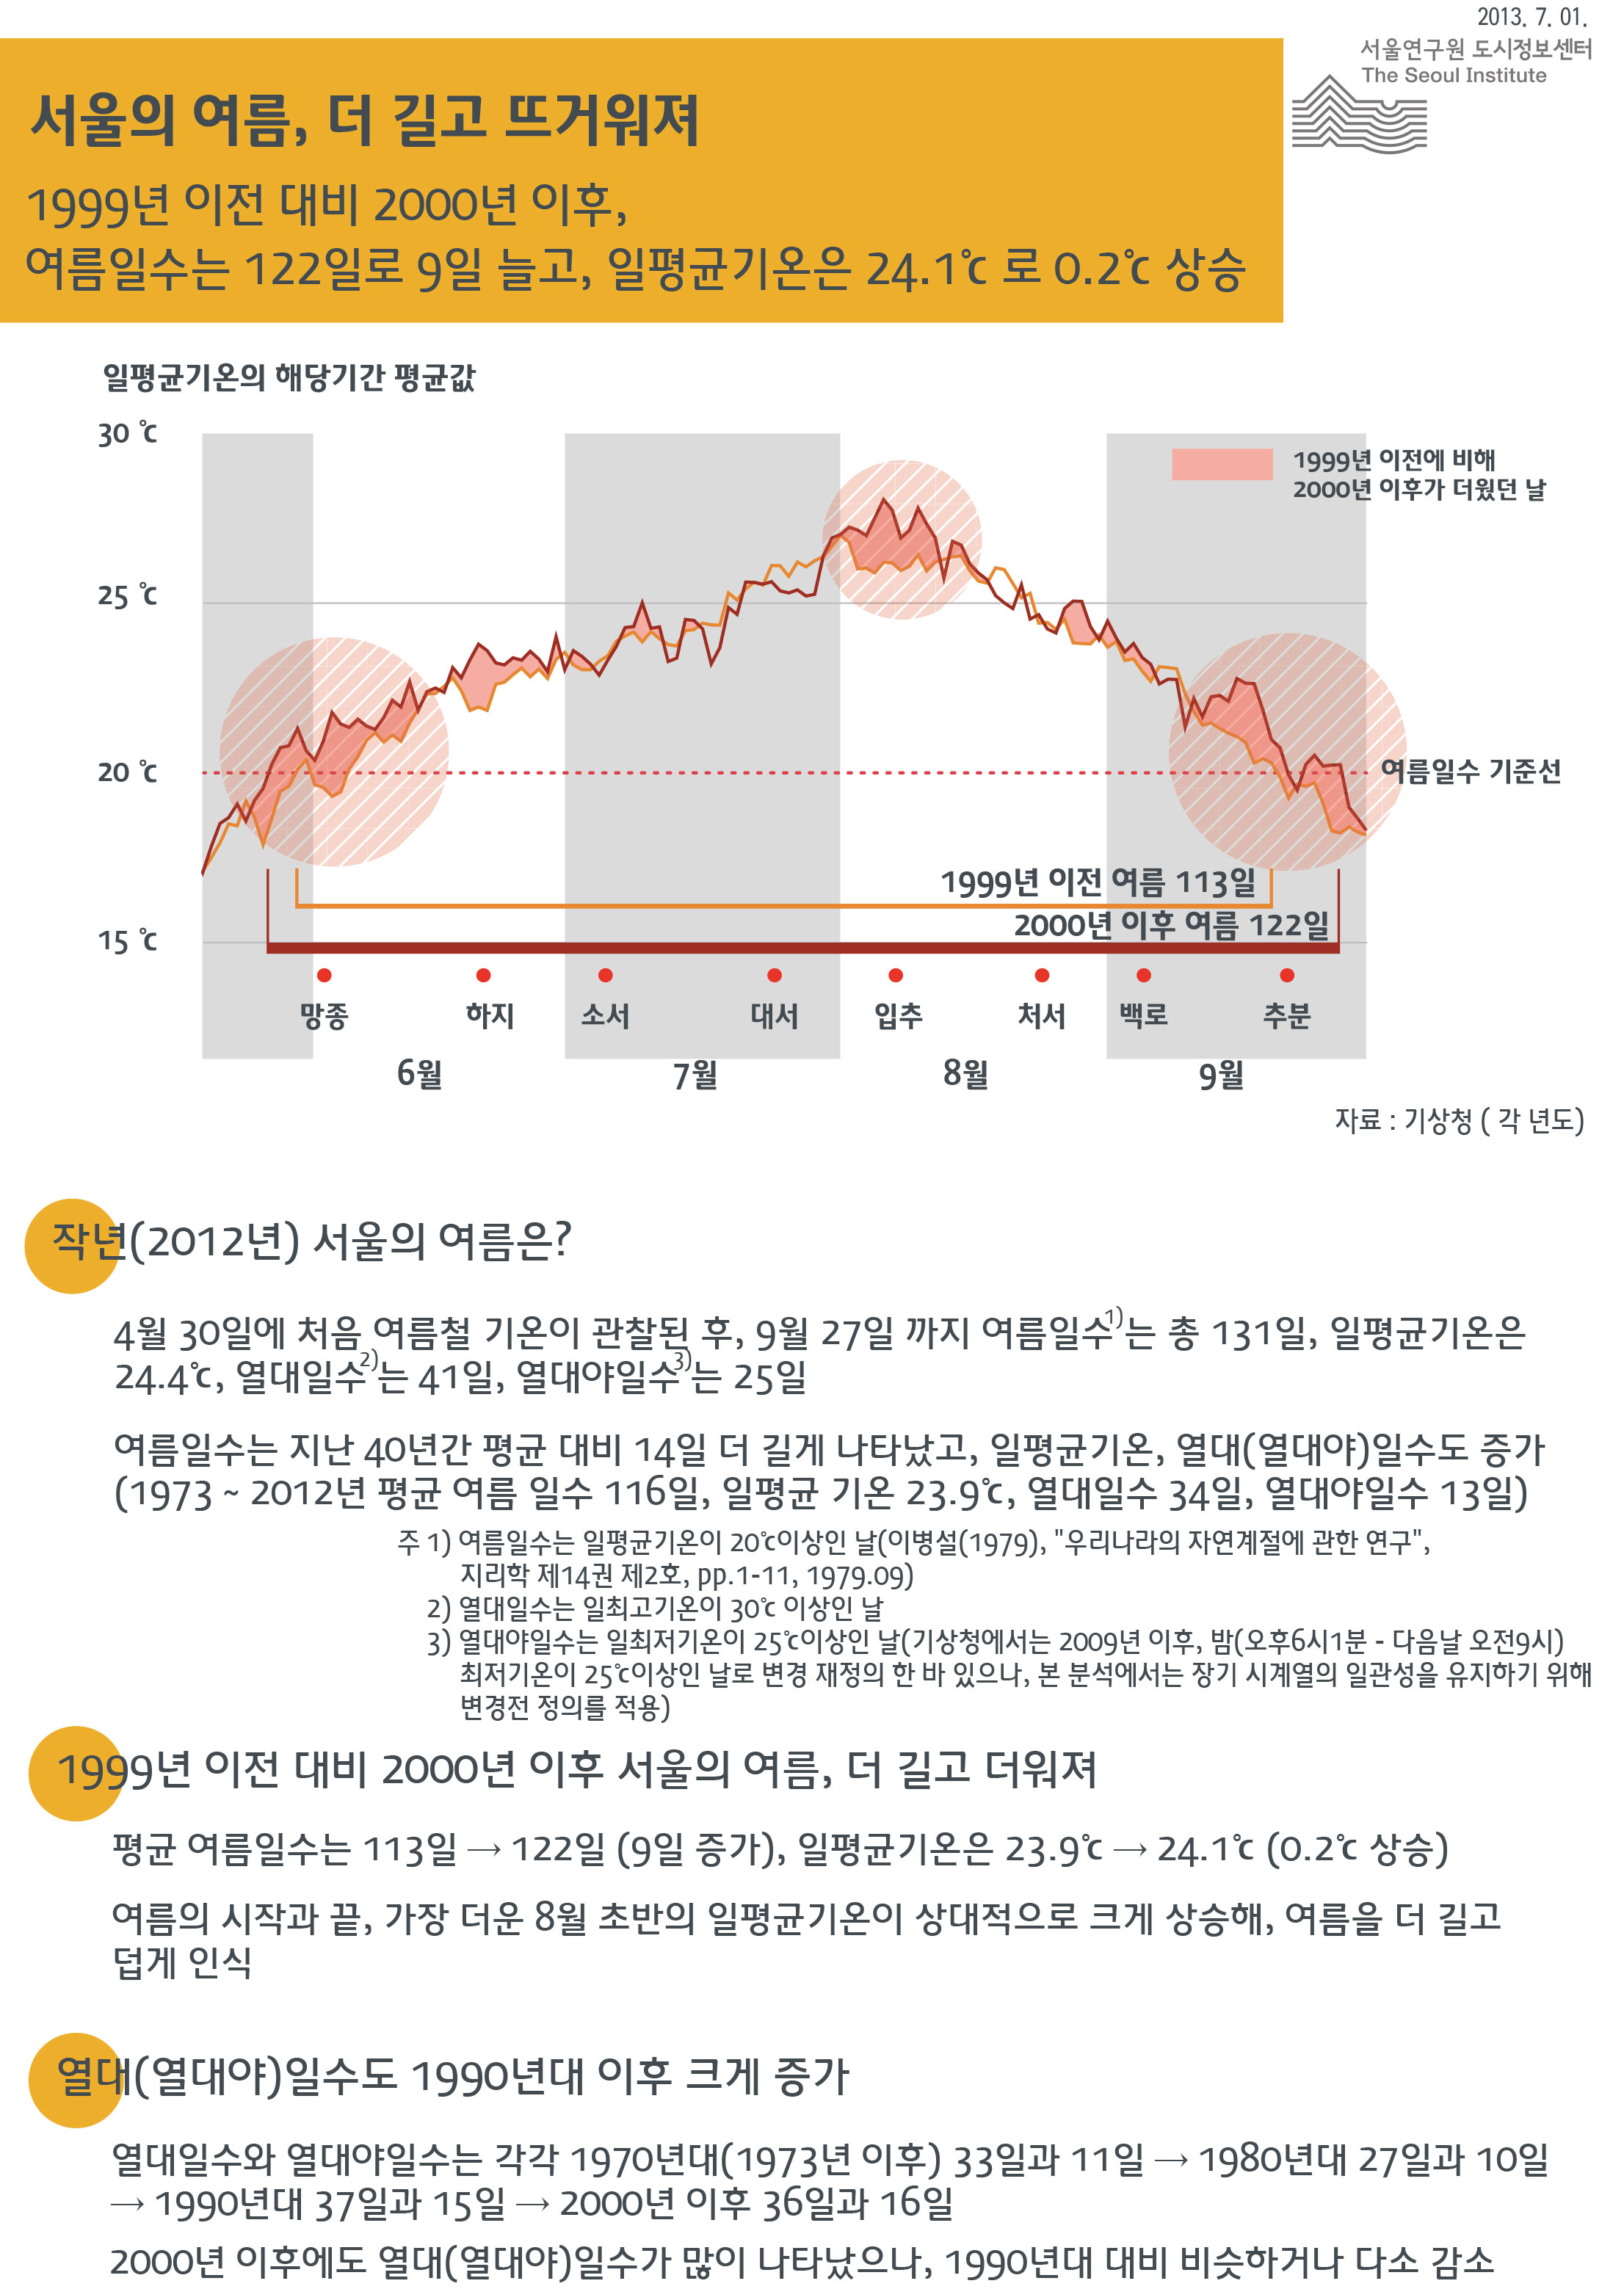 서울의 여름, 더 길고 뜨거워져 서울인포그래픽스 제40호 2013년 7월 1일 4월 30일 1999년 이전 대비 2000년 이후, 여름일수는 122일로 9일 늘고, 일평균기온은 24.1℃로 0.2℃ 상승함으로 정리될 수 있습니다. 인포그래픽으로 제공되는 그래픽은 하단에 표로 자세히 제공됩니다.